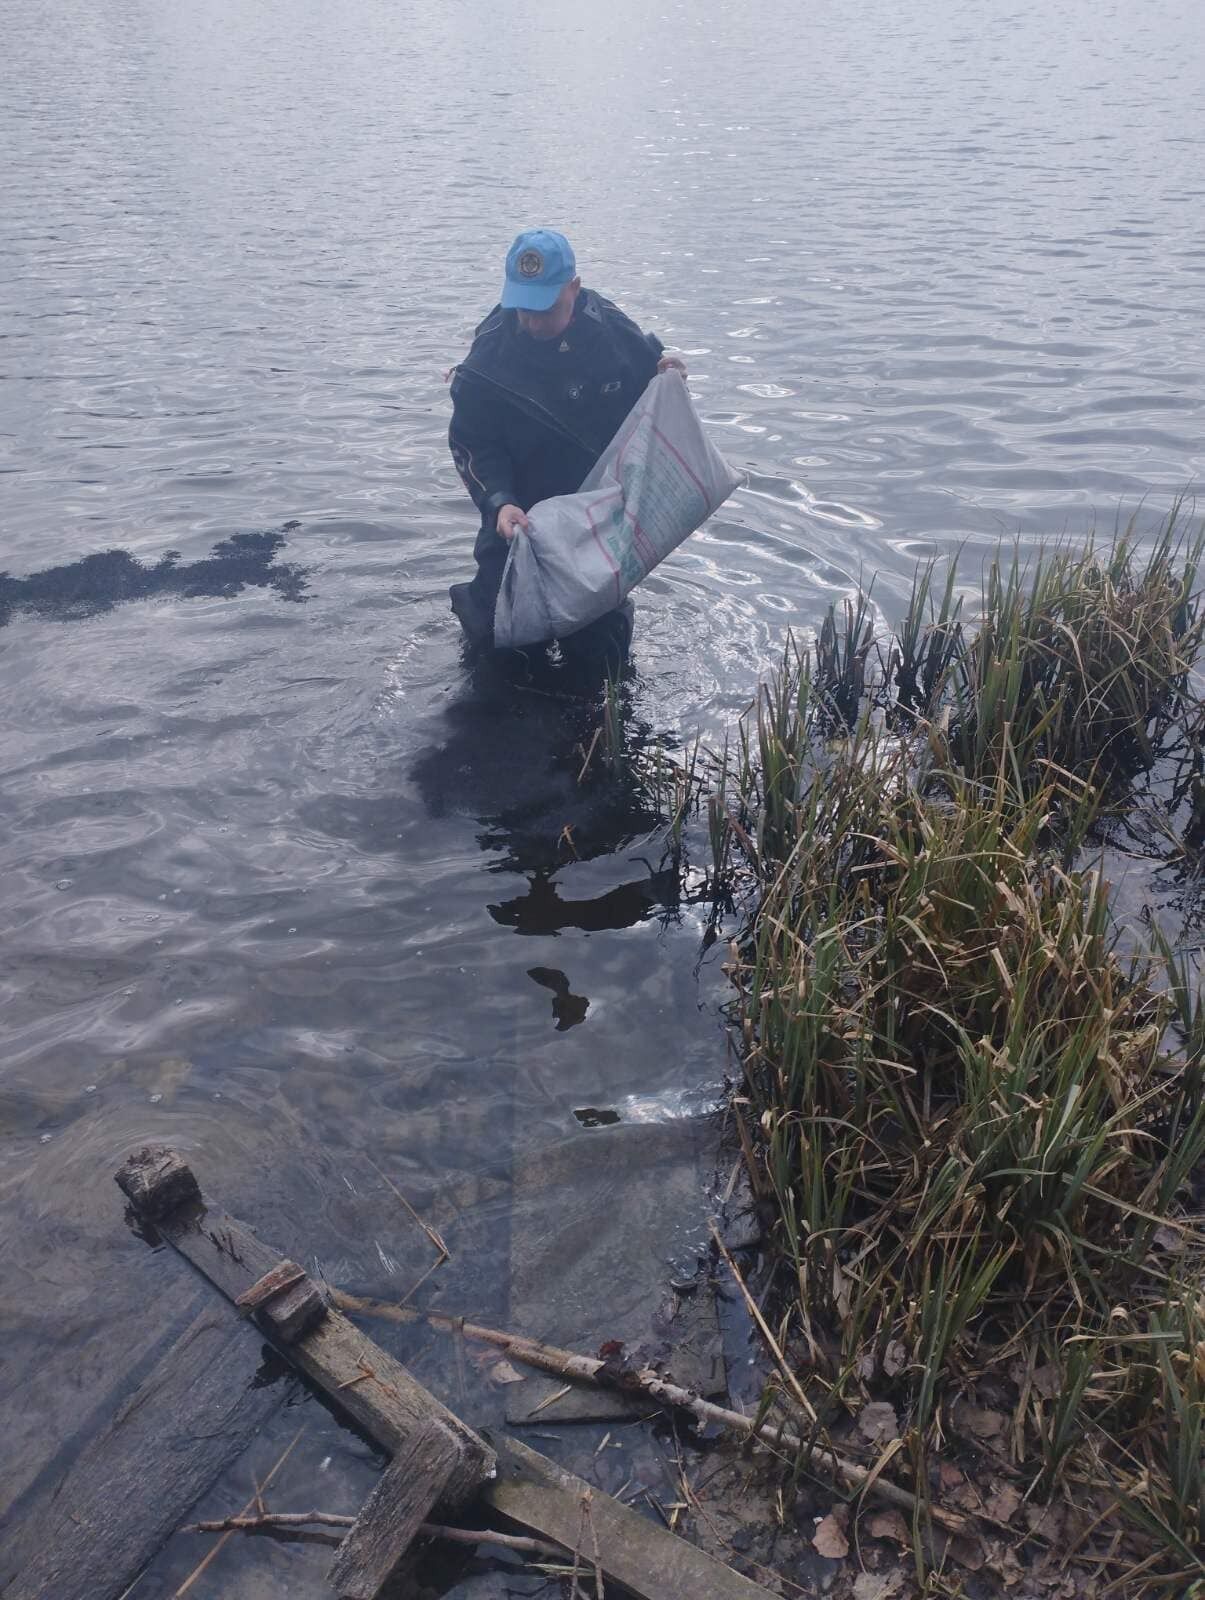 Другий випадок з початку року: у Києві невідомі злили нафтопродукти в озеро на Оболоні. Фото і подробиці